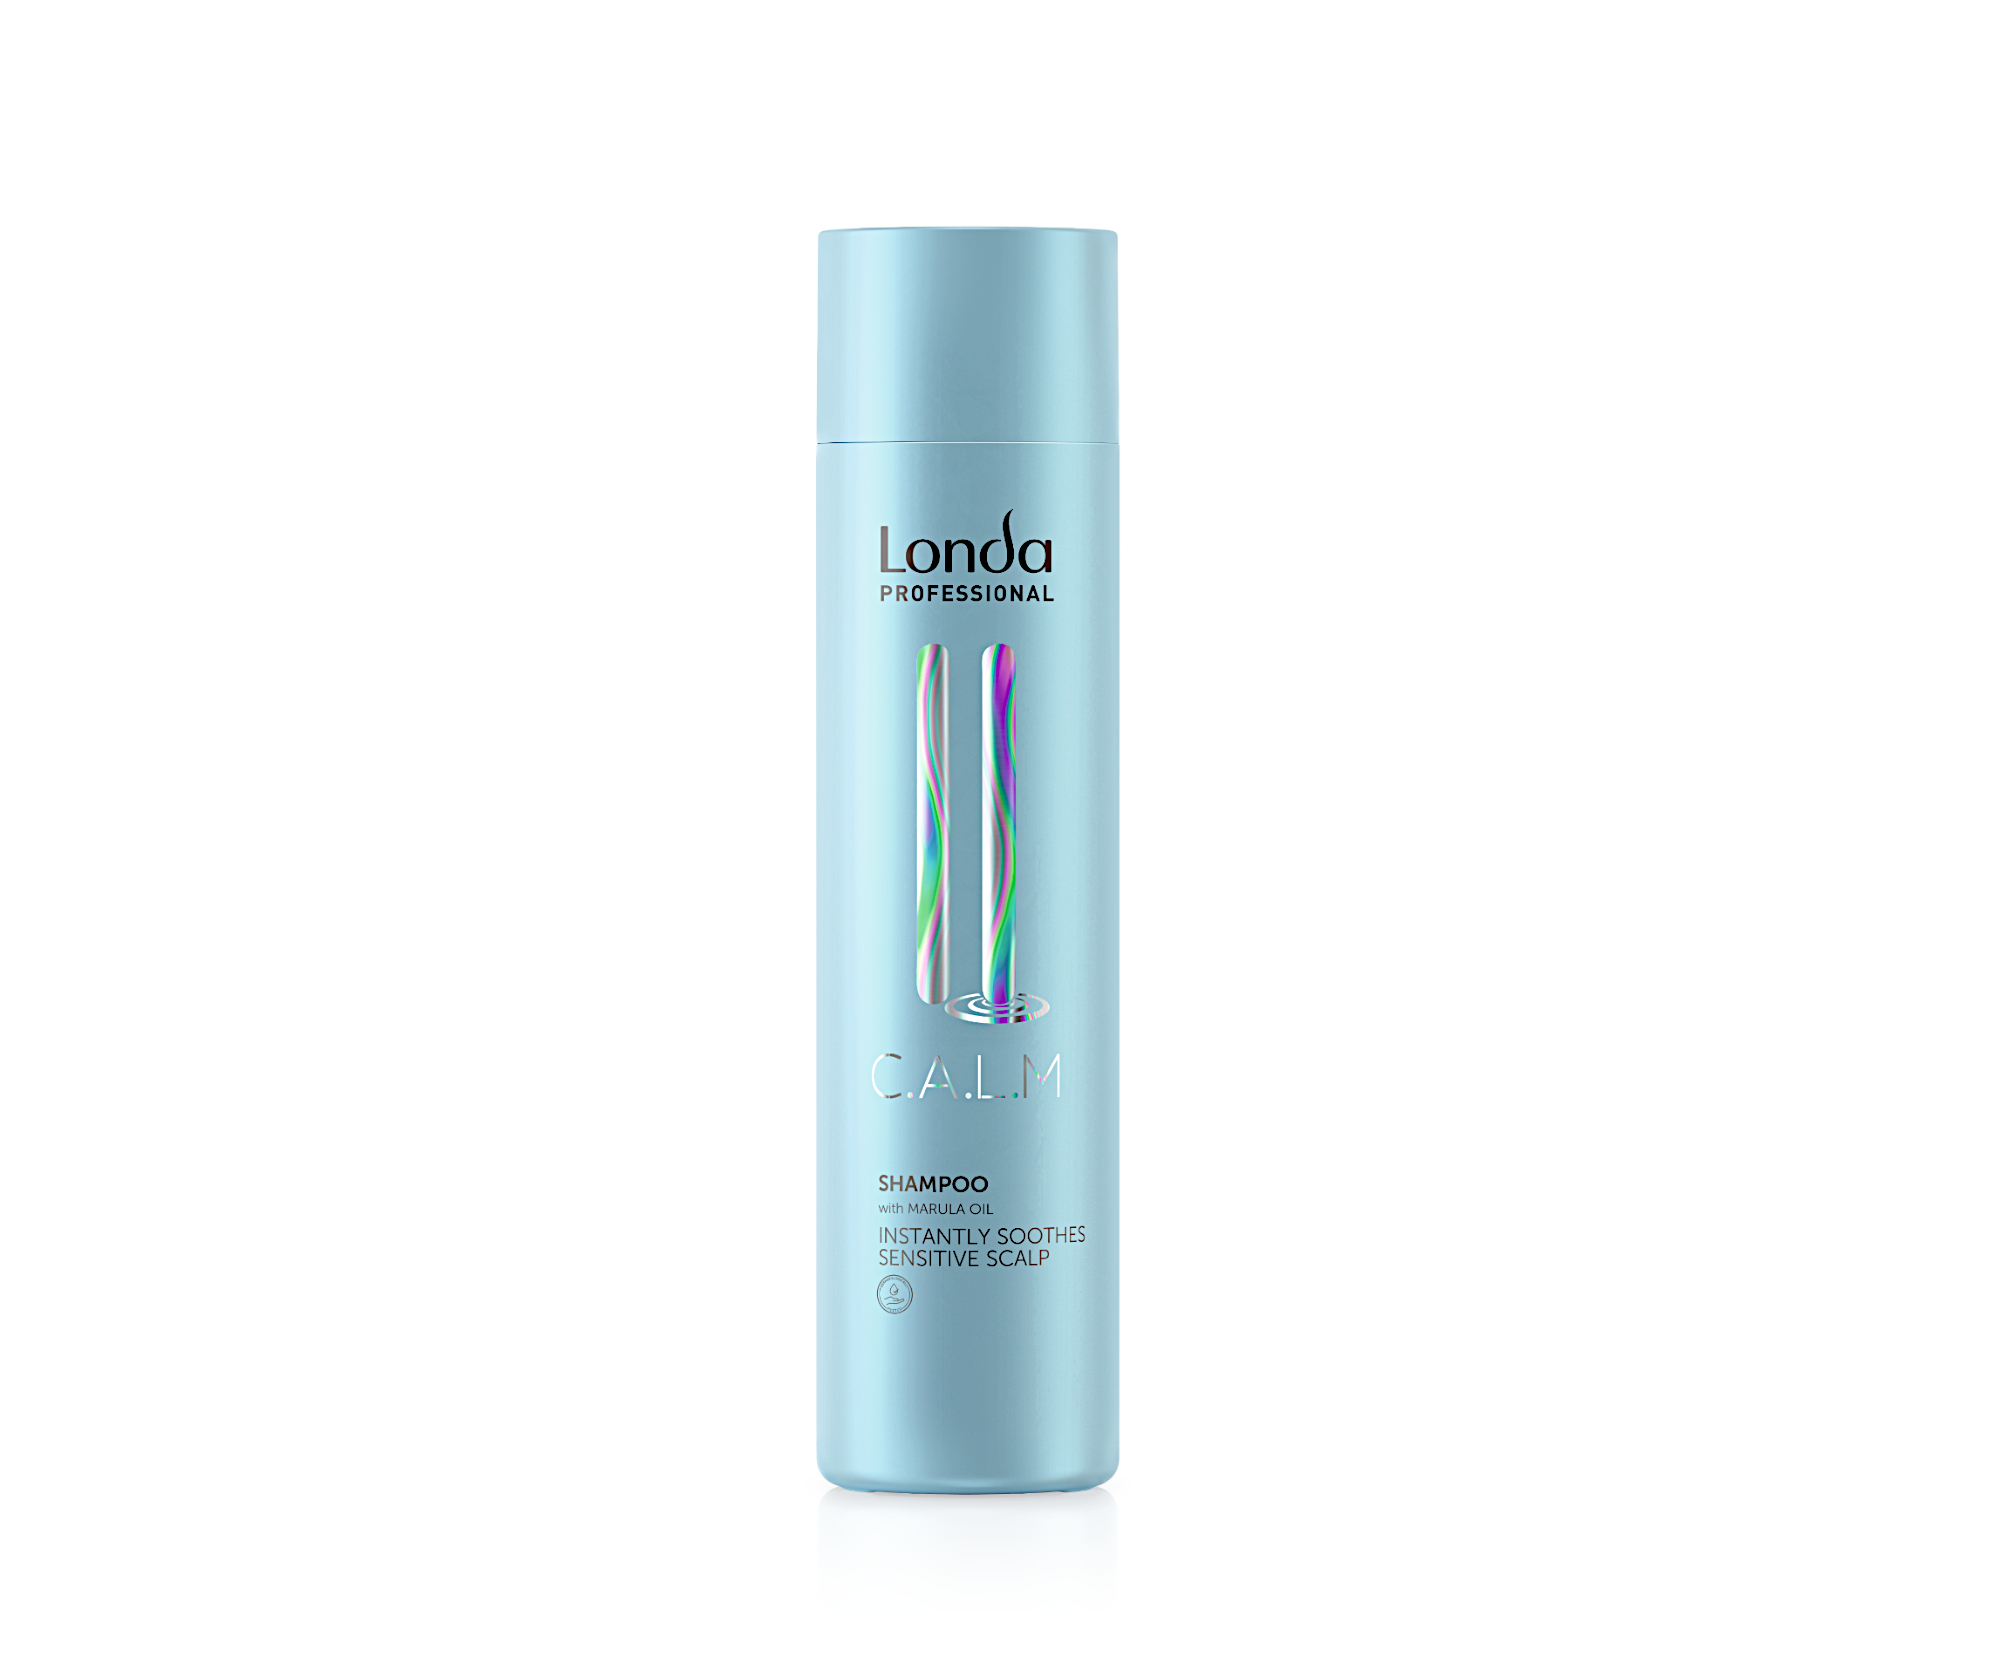 Šampon pro zklidnění vlasové pokožky Londa Professional C.A.L.M Shampoo - 250 ml (99350117644) + dárek zdarma